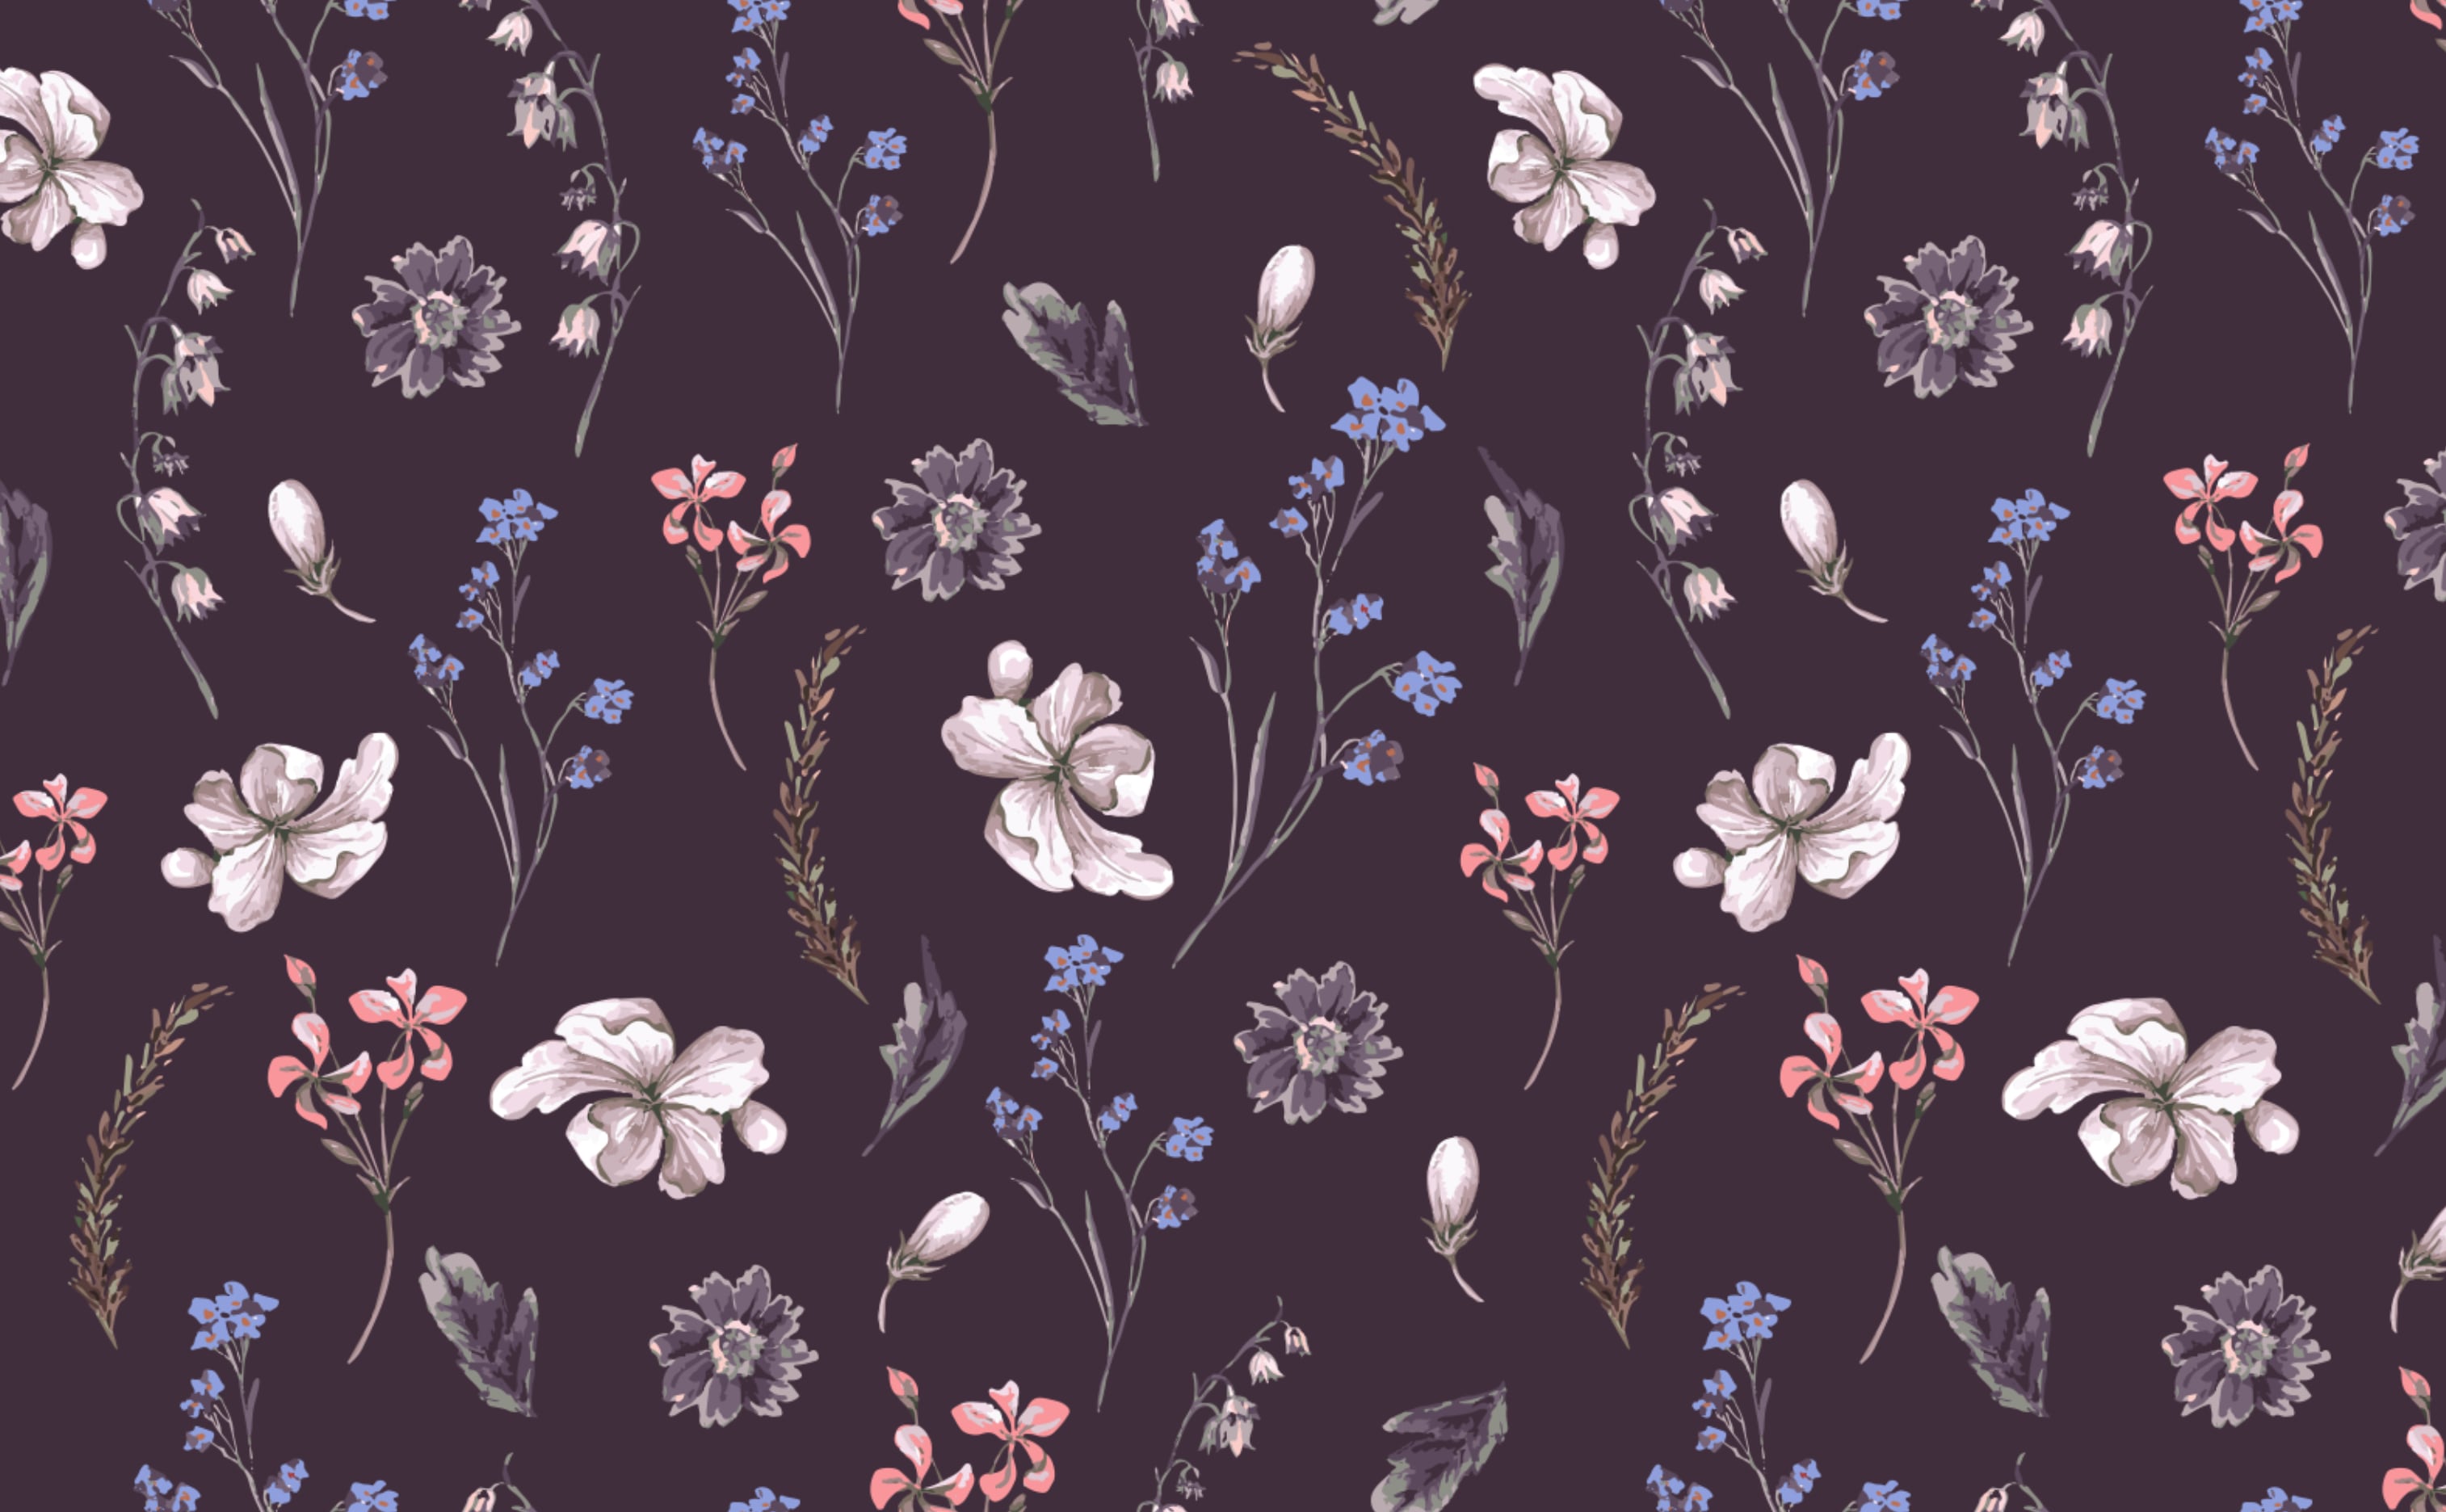 Vintage Floral Wallpaper for Walls